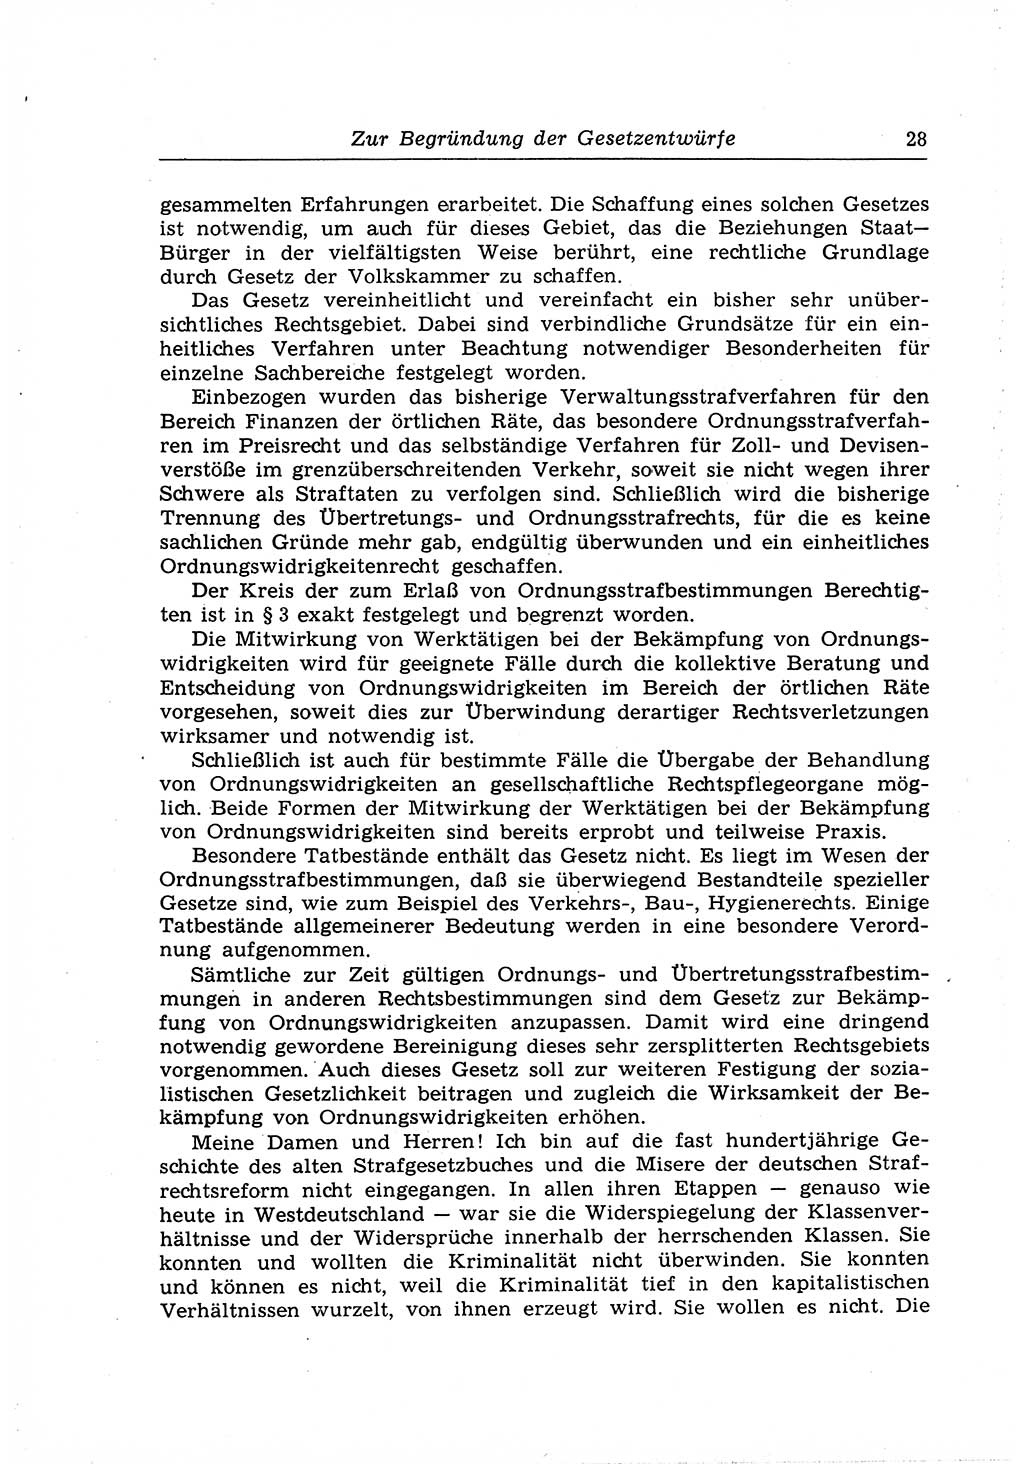 Strafrecht der Deutschen Demokratischen Republik (DDR), Lehrkommentar zum Strafgesetzbuch (StGB), Allgemeiner Teil 1969, Seite 28 (Strafr. DDR Lehrkomm. StGB AT 1969, S. 28)